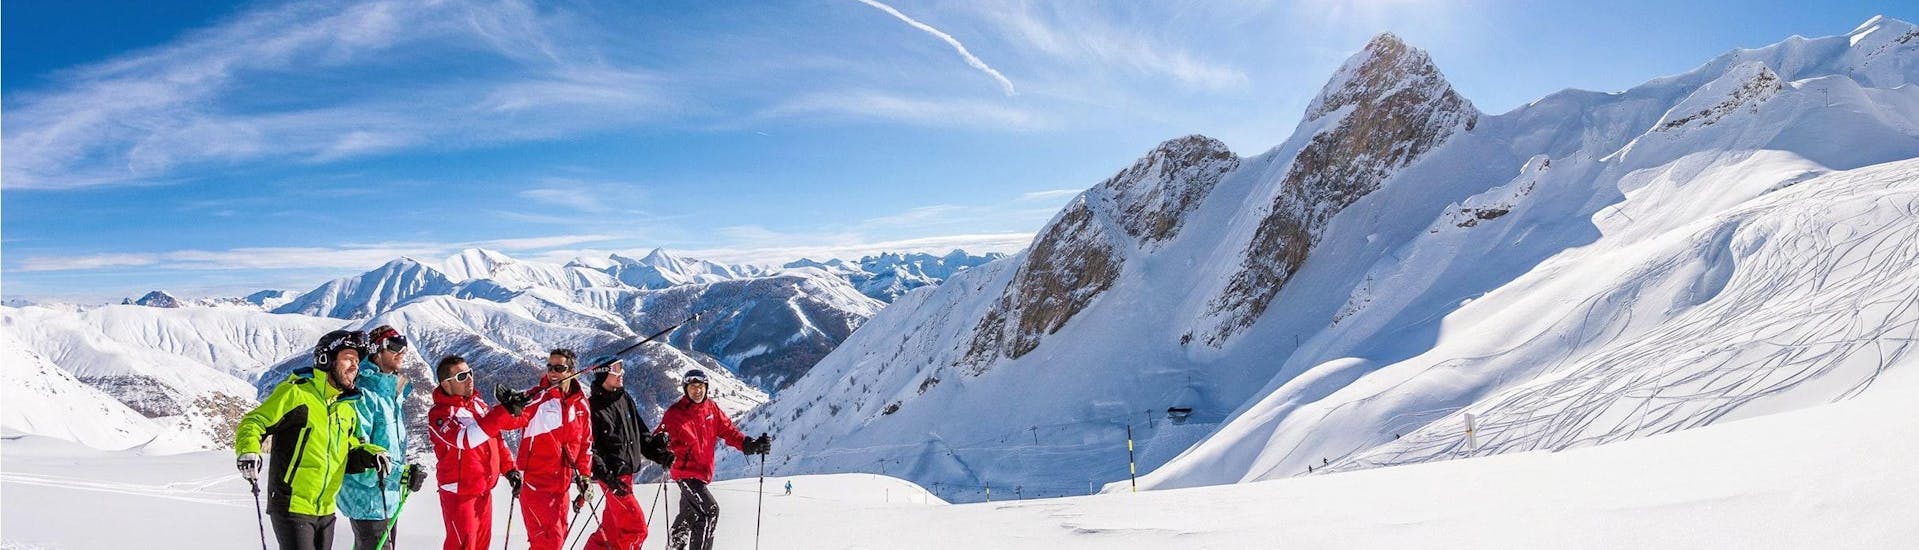 Les skieurs sont au sommet de la montagne, profitant de leur Cours de ski Adultes pour Tous niveaux avec l'école de ski ESF La Foux d'Allos.